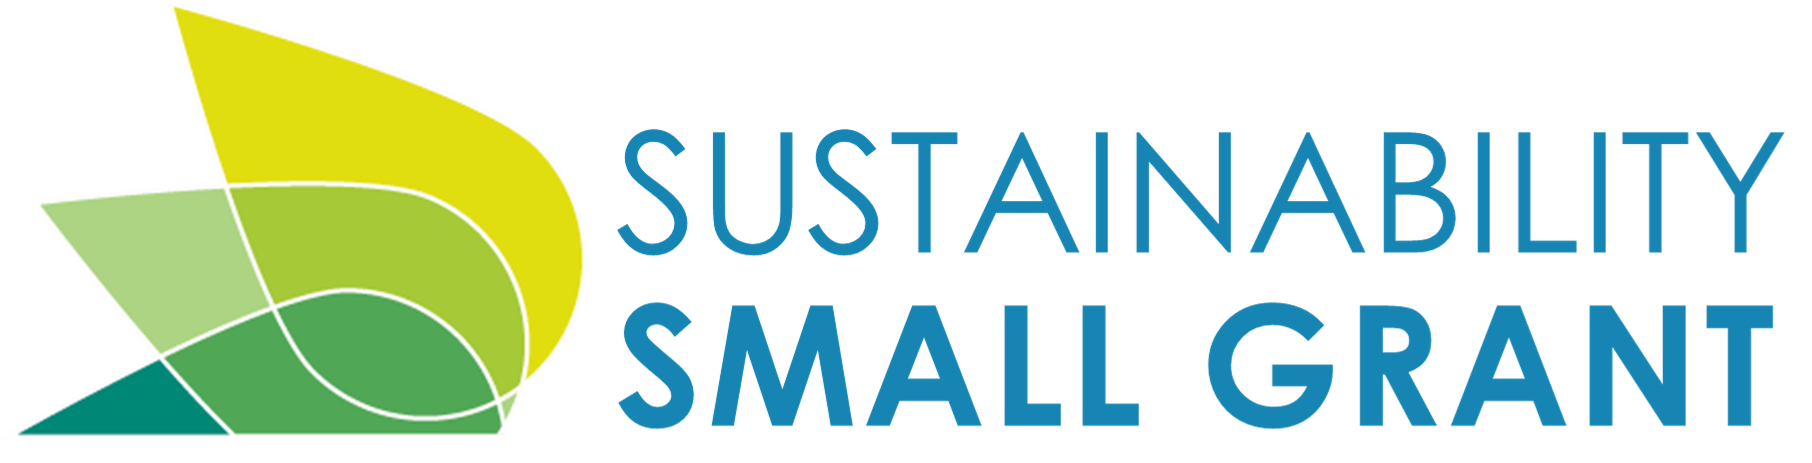 Sustainability Small Grant logo